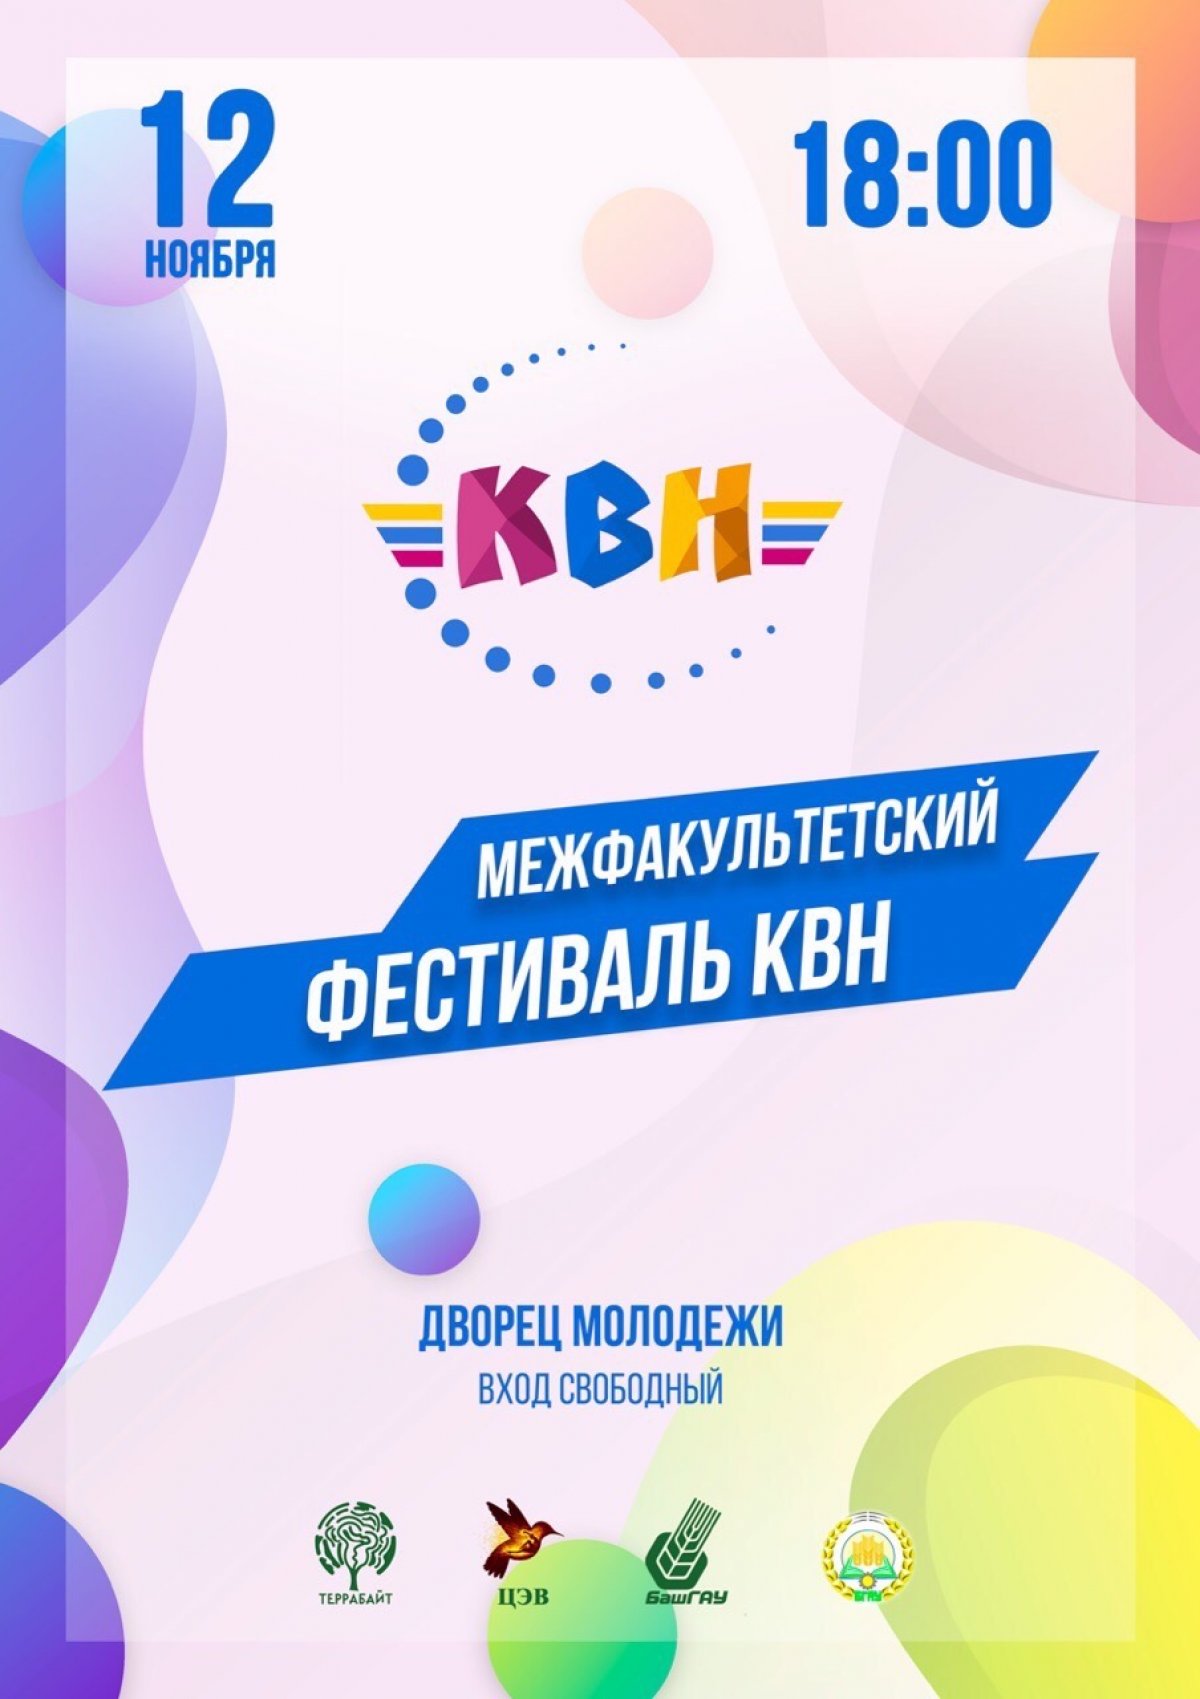 @bsau_ru Новость от 12-11-2019